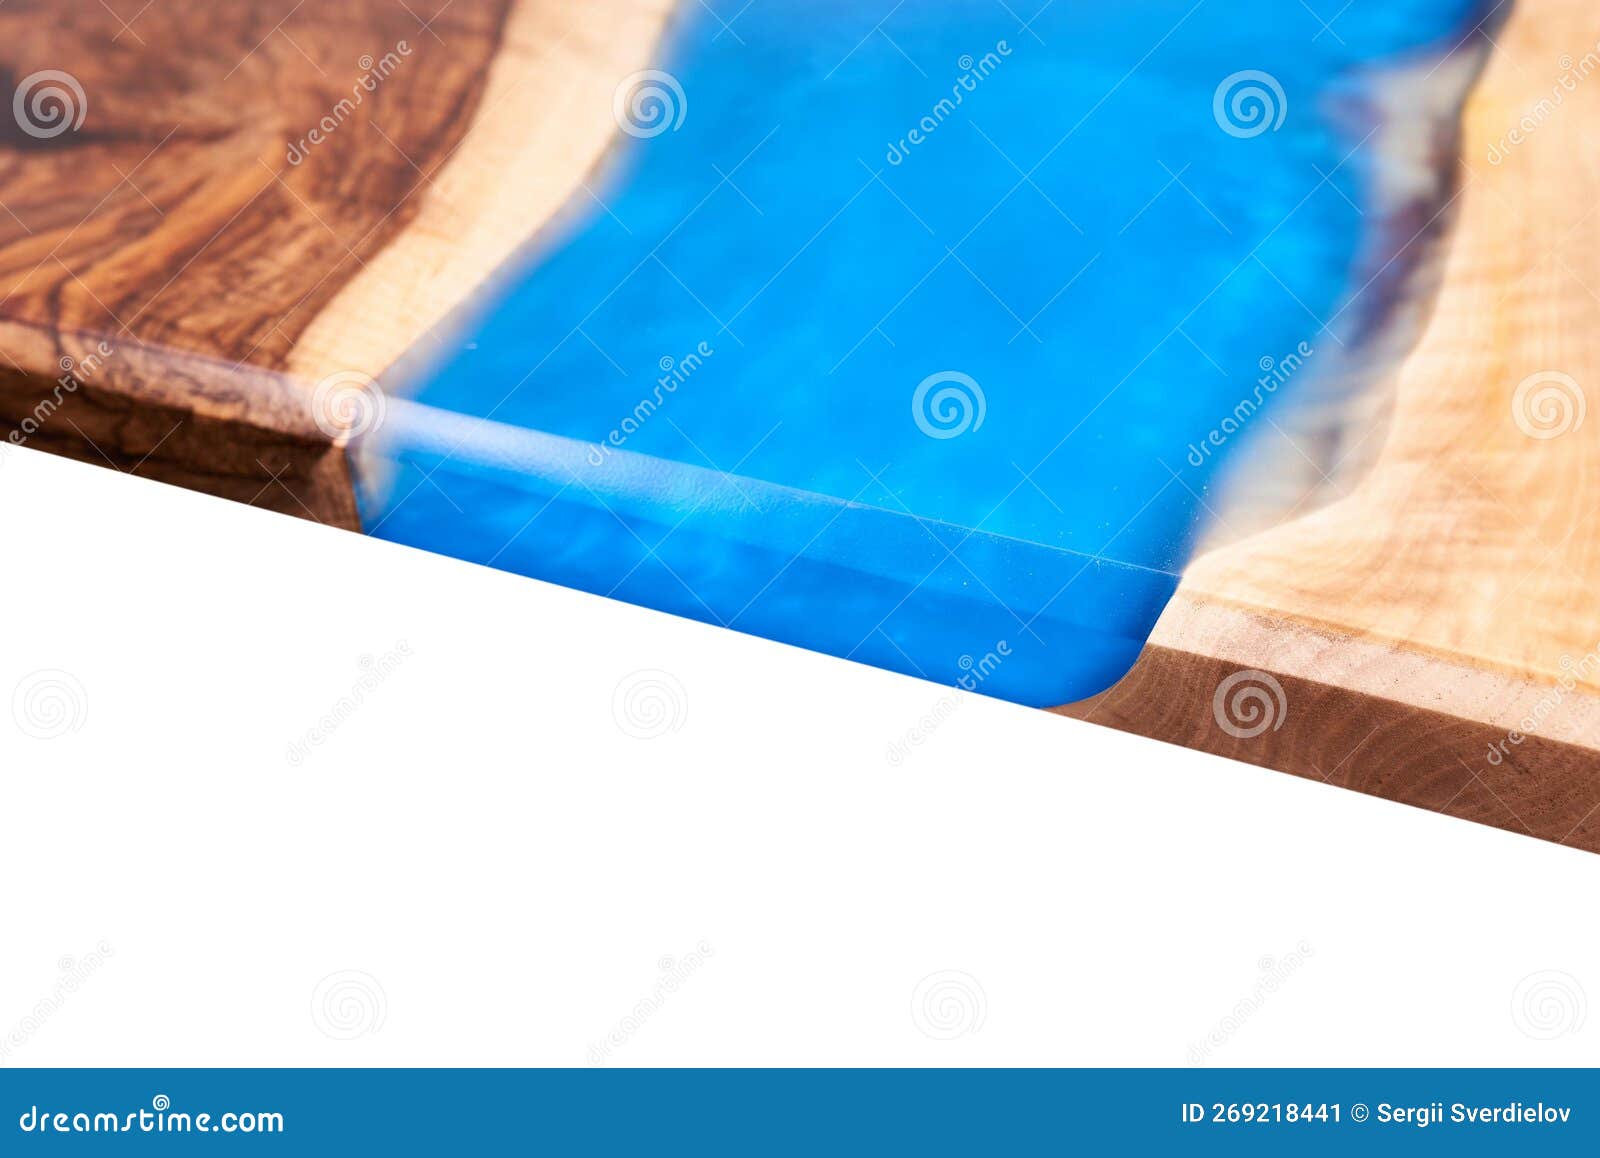 Textura de madera y resina epoxi azul.